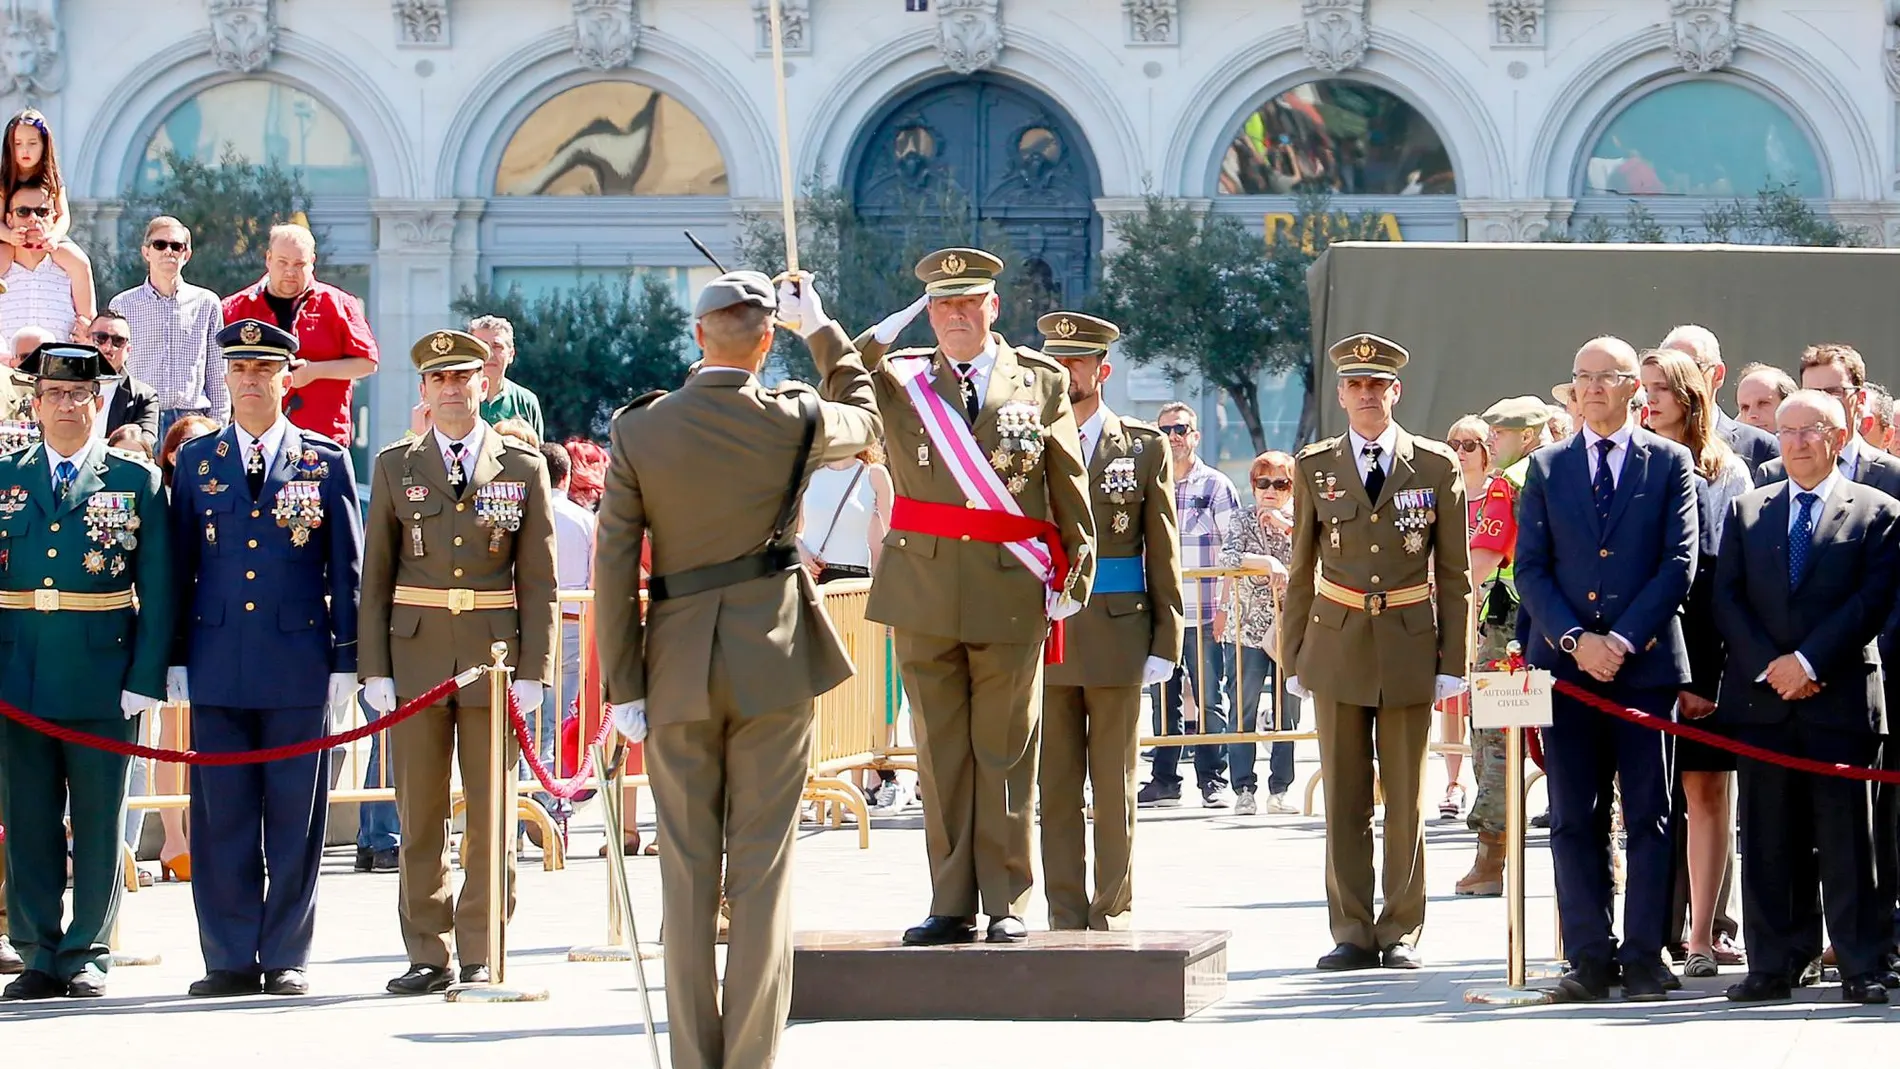 El general jefe de la Cuarta Subinspección del Ejército, José Rivas Moriana, saluda a la tropa en presencia de autoridades civiles y militares